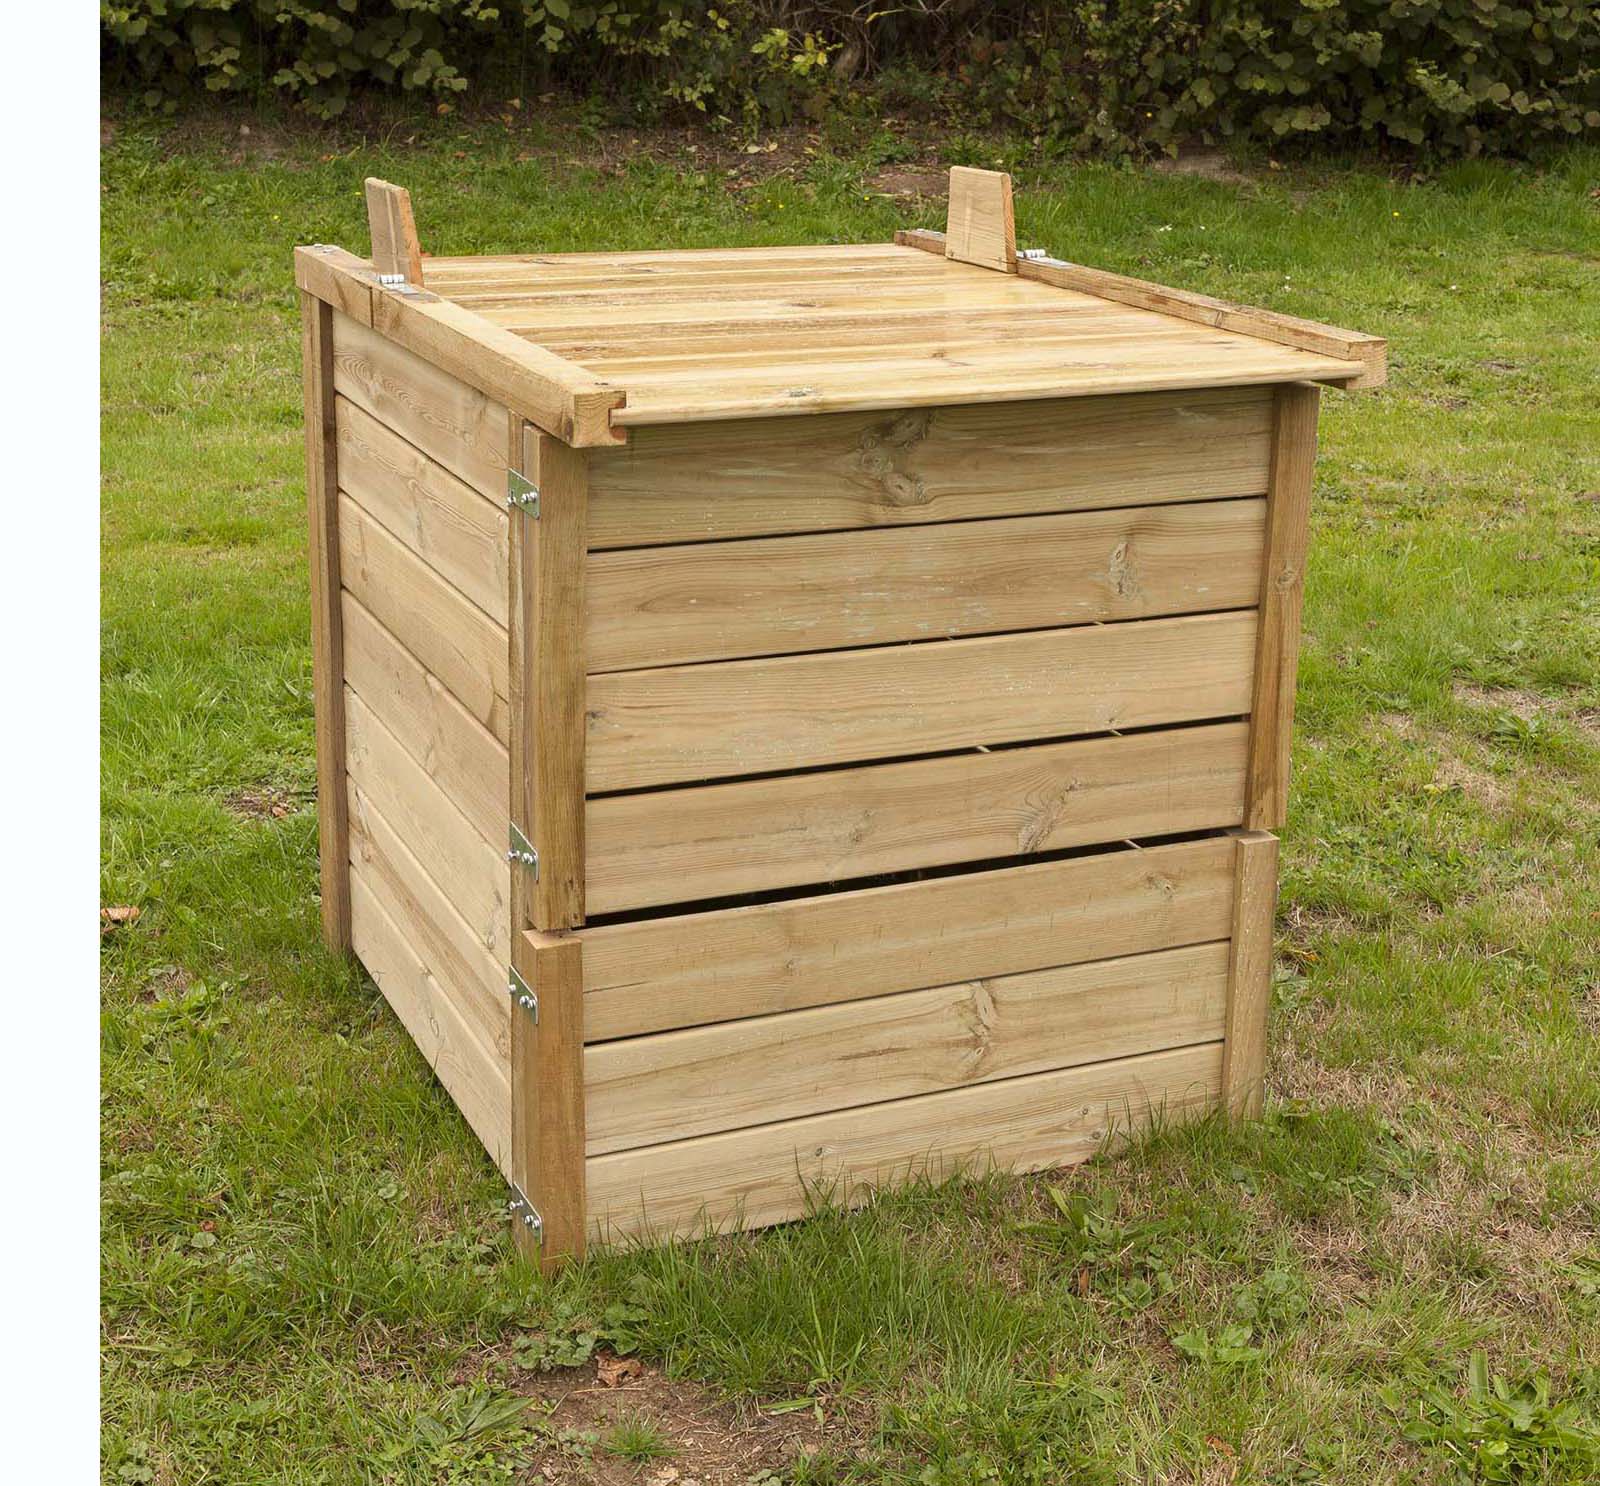 Composteur de jardin en bois et bac a compost